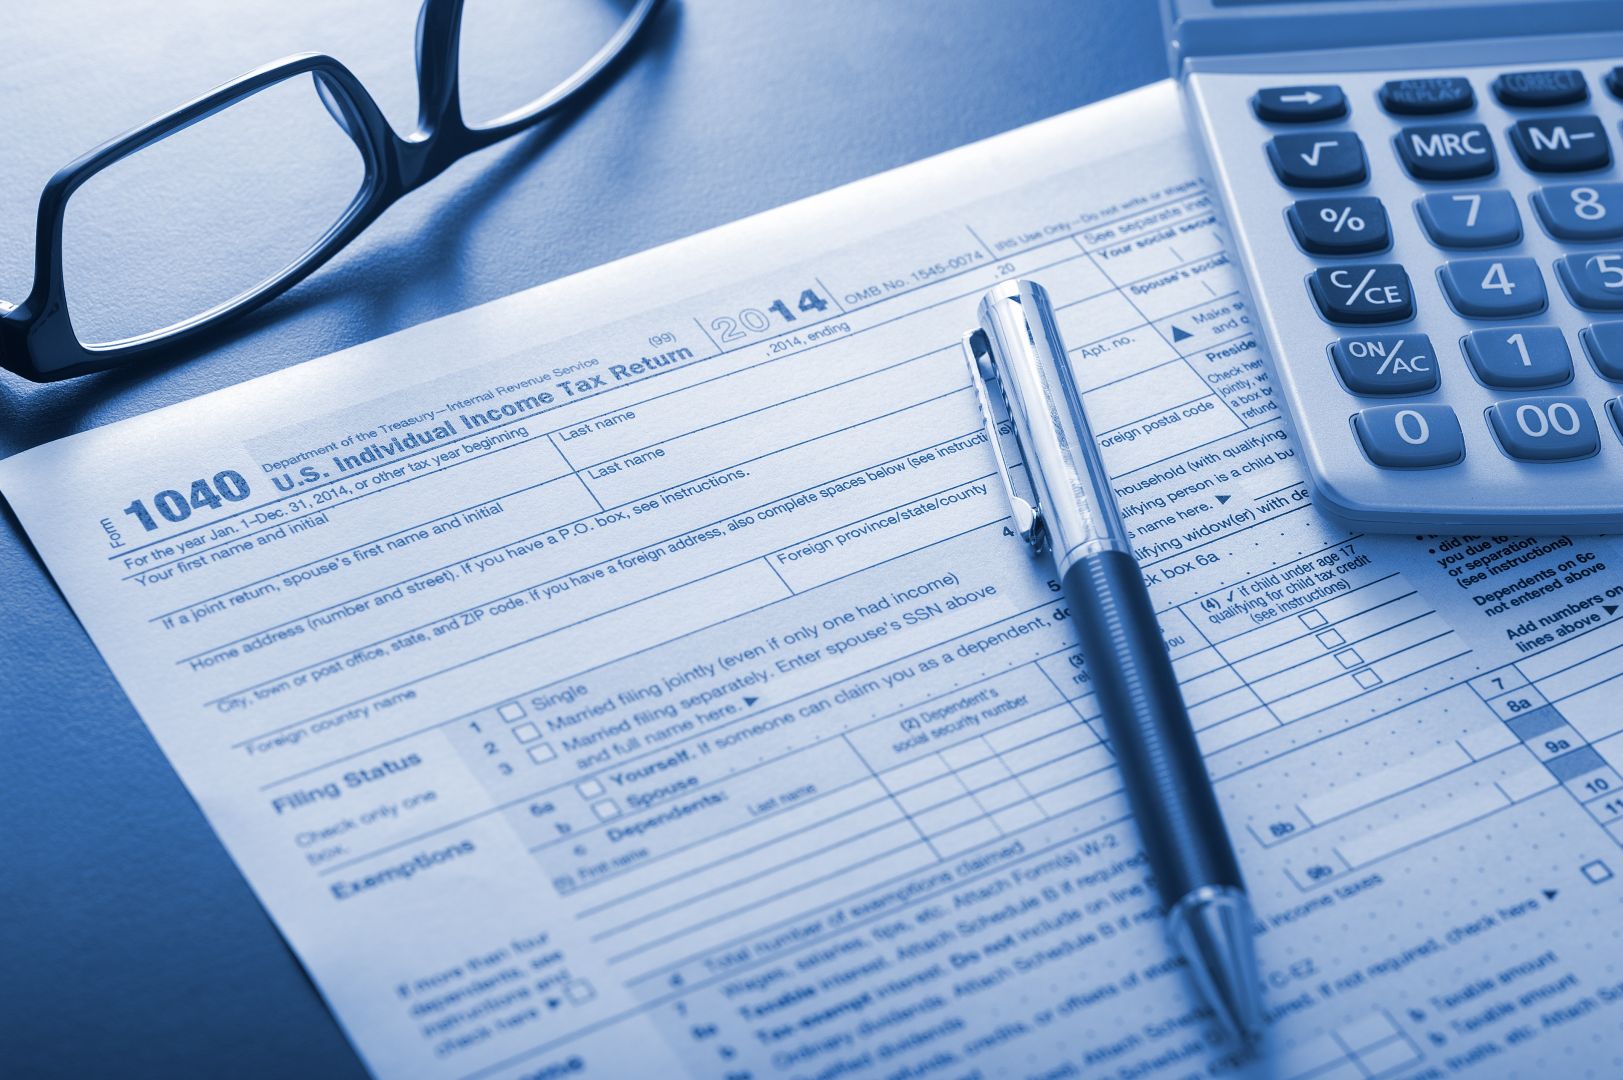 Poptávka na zpracování daňového přiznání pro fyzickou osobu (Účetní služby) - Nový Jičín